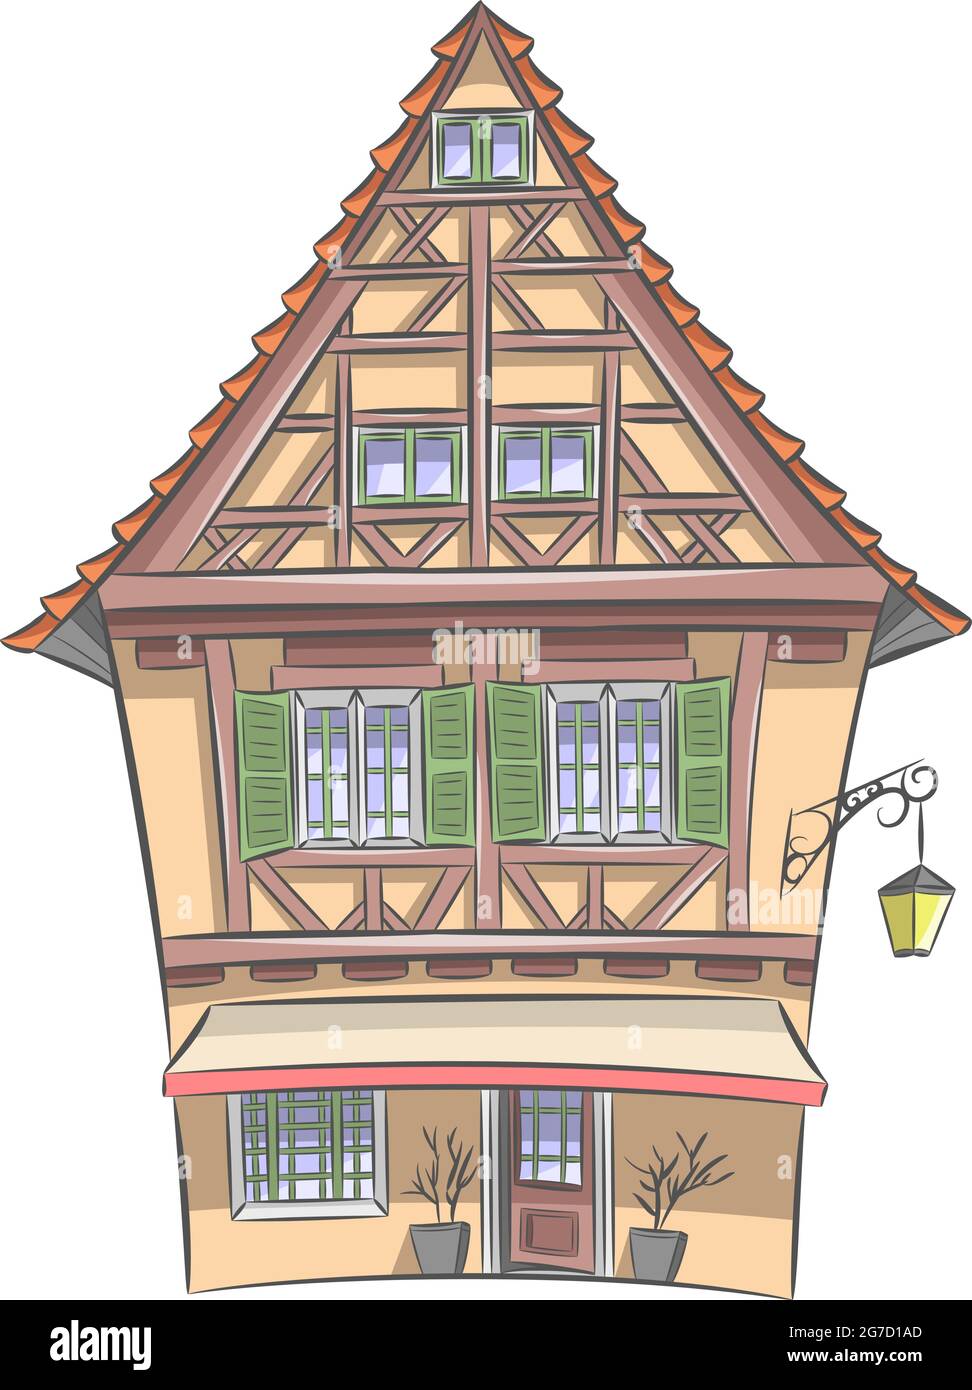 Immagine vettoriale di una vecchia casa medievale in legno giallo con tetto in tegole e lanterna. Colmar. Alsazia Francia. Illustrazione Vettoriale